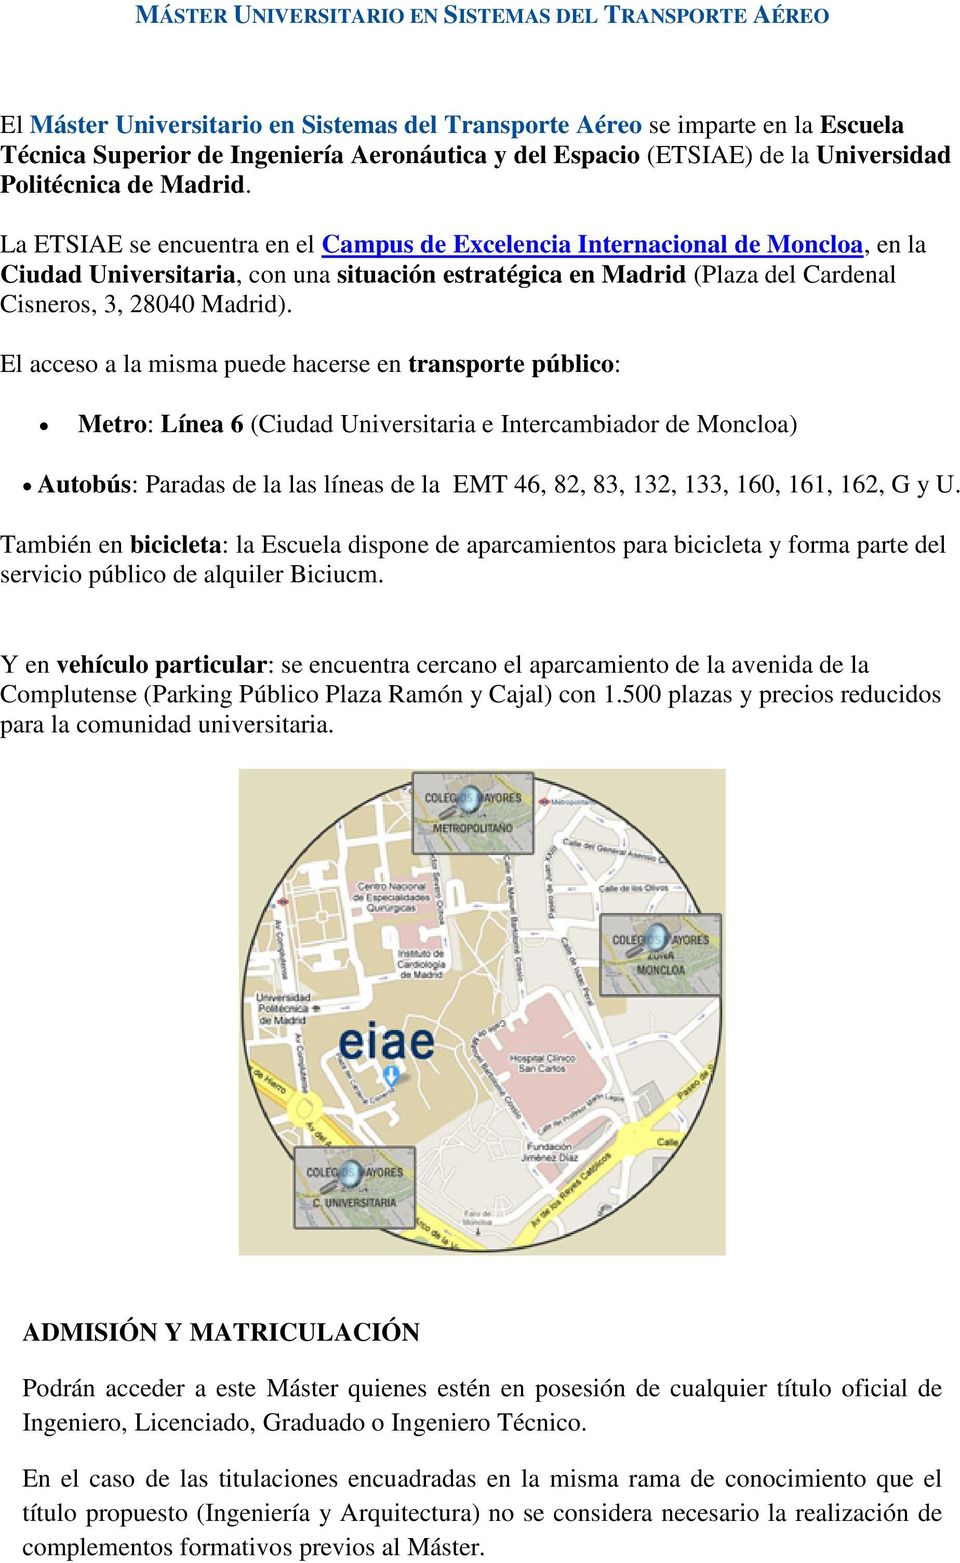 La ETSIAE se encuentra en el Campus de Excelencia Internacional de Moncloa, en la Ciudad Universitaria, con una situación estratégica en Madrid (Plaza del Cardenal Cisneros, 3, 28040 Madrid).